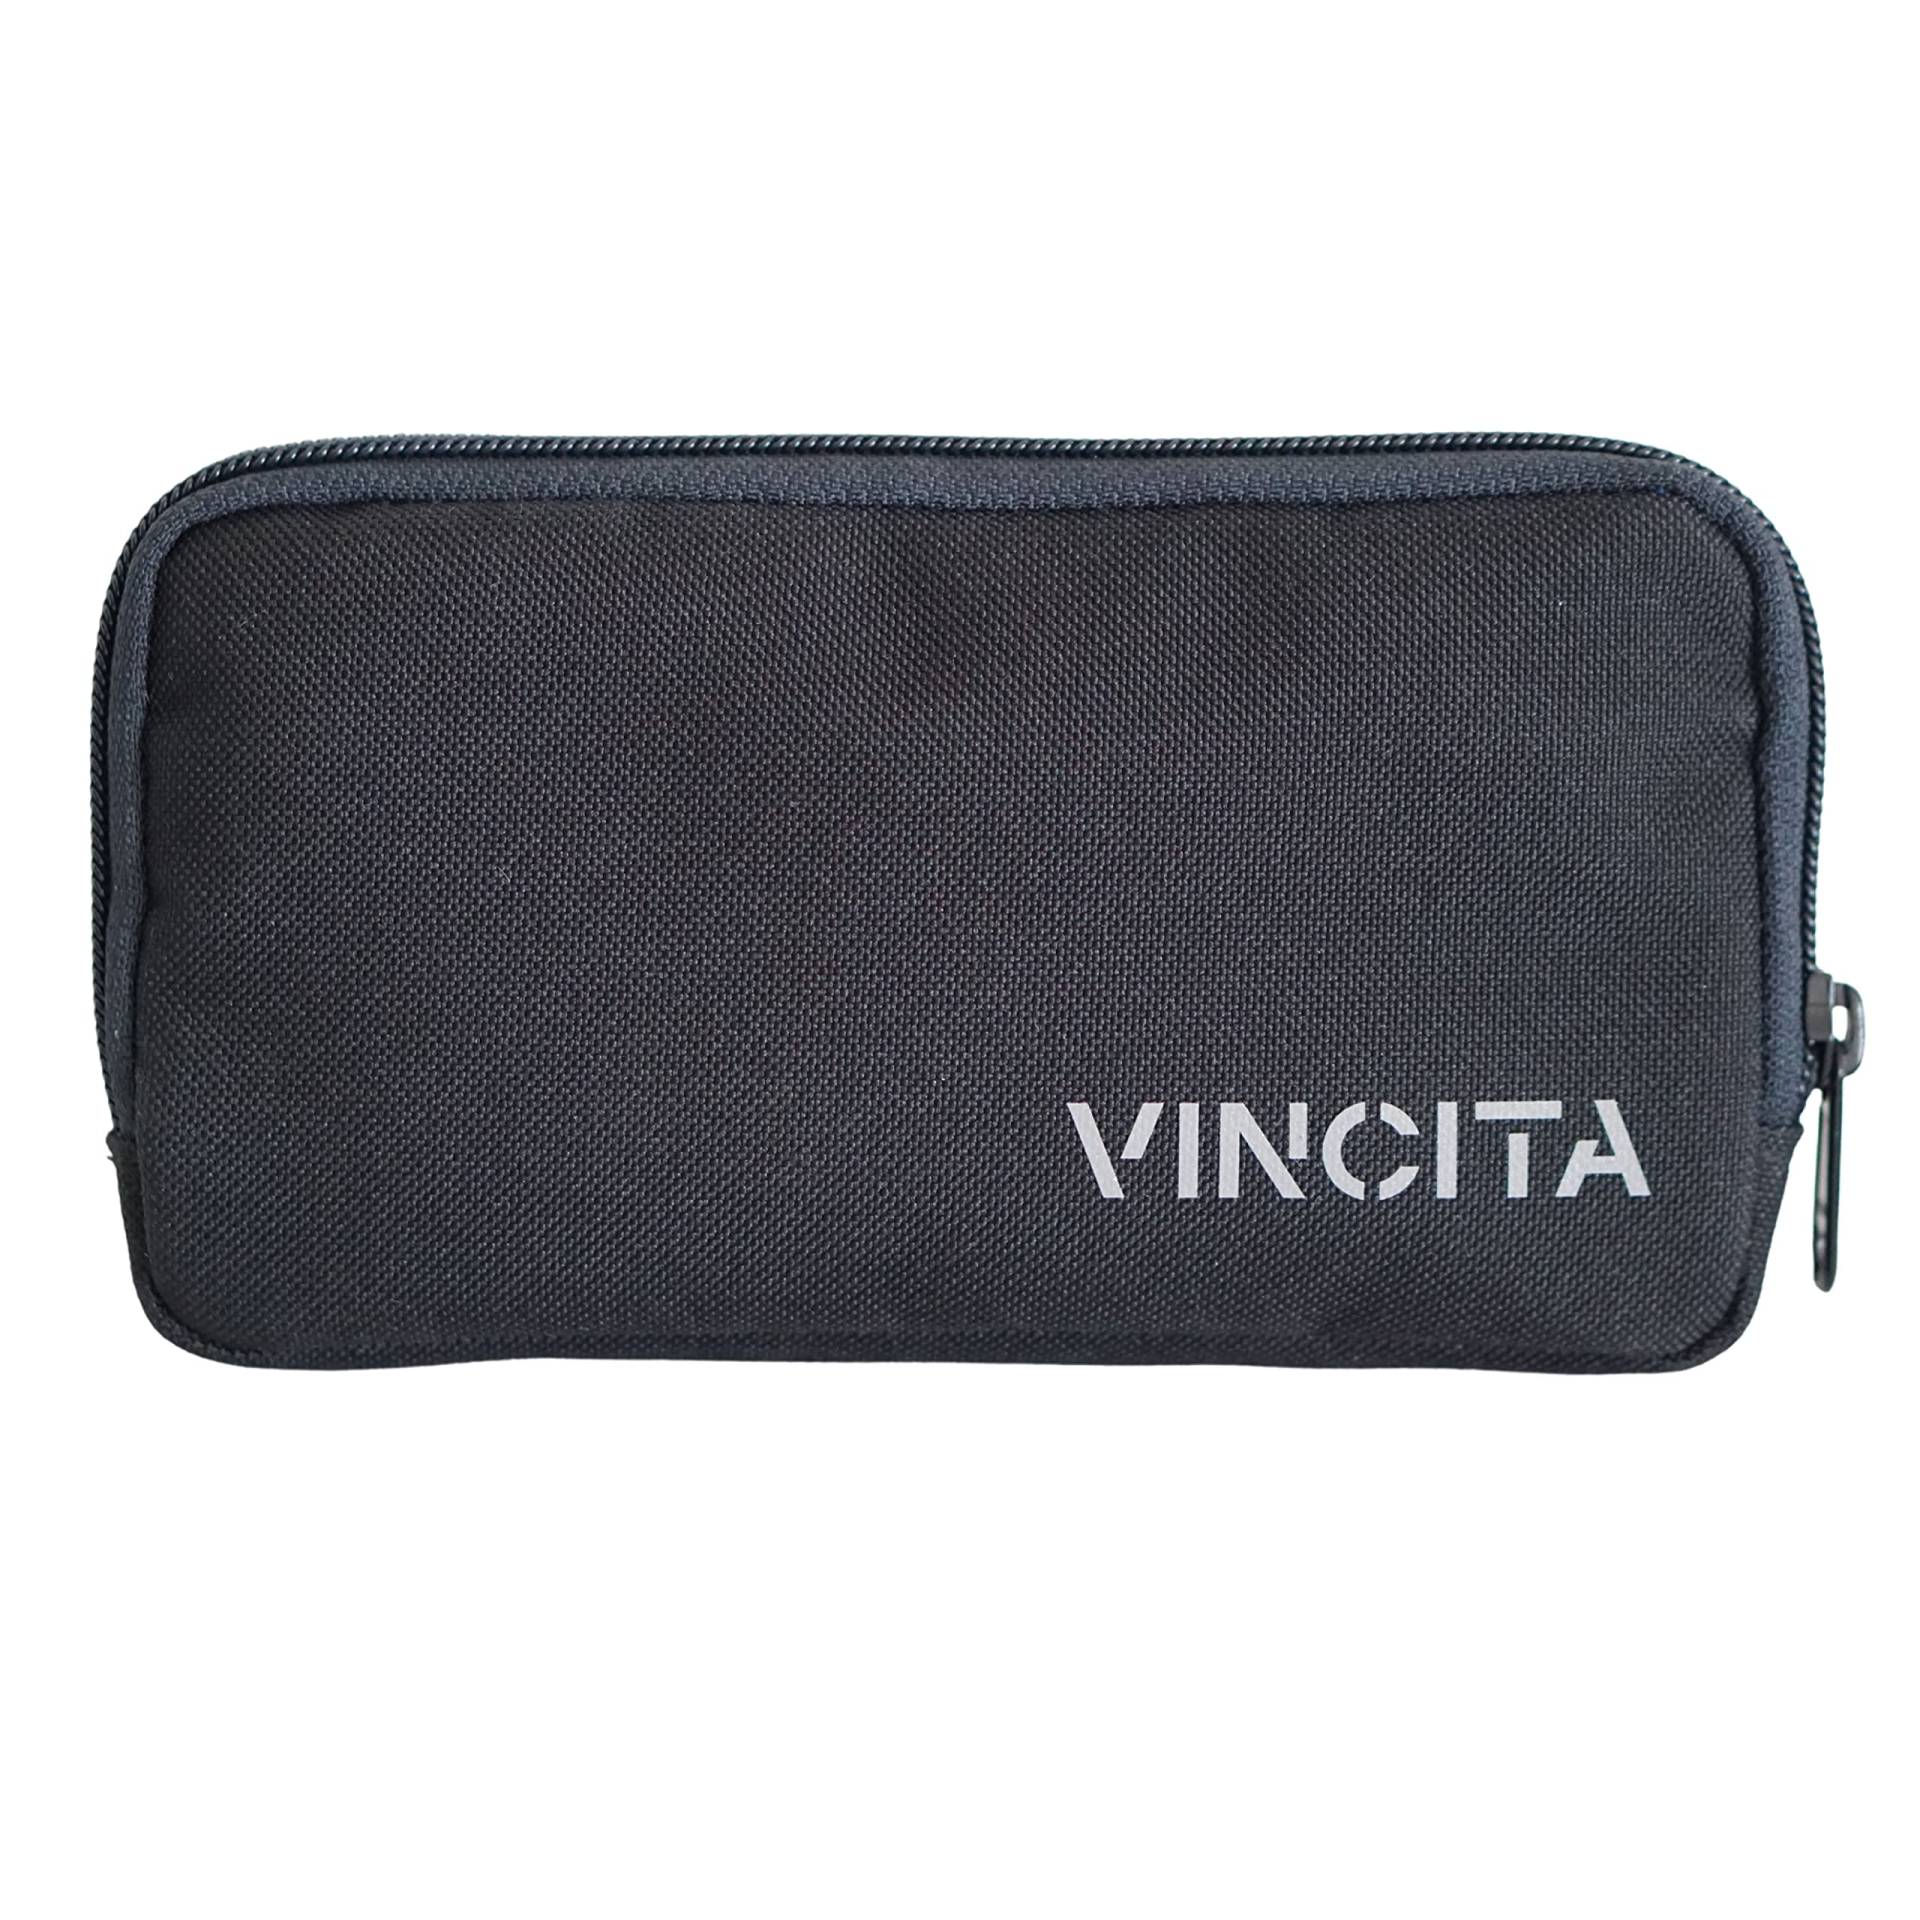 Vincita Essentials Etui – Fahrrad Geldbörse aus robustem 600D Polyester, Schwarze, Wasserabweisende Aufbewahrungstasche – Karten und Telefon von Vincita